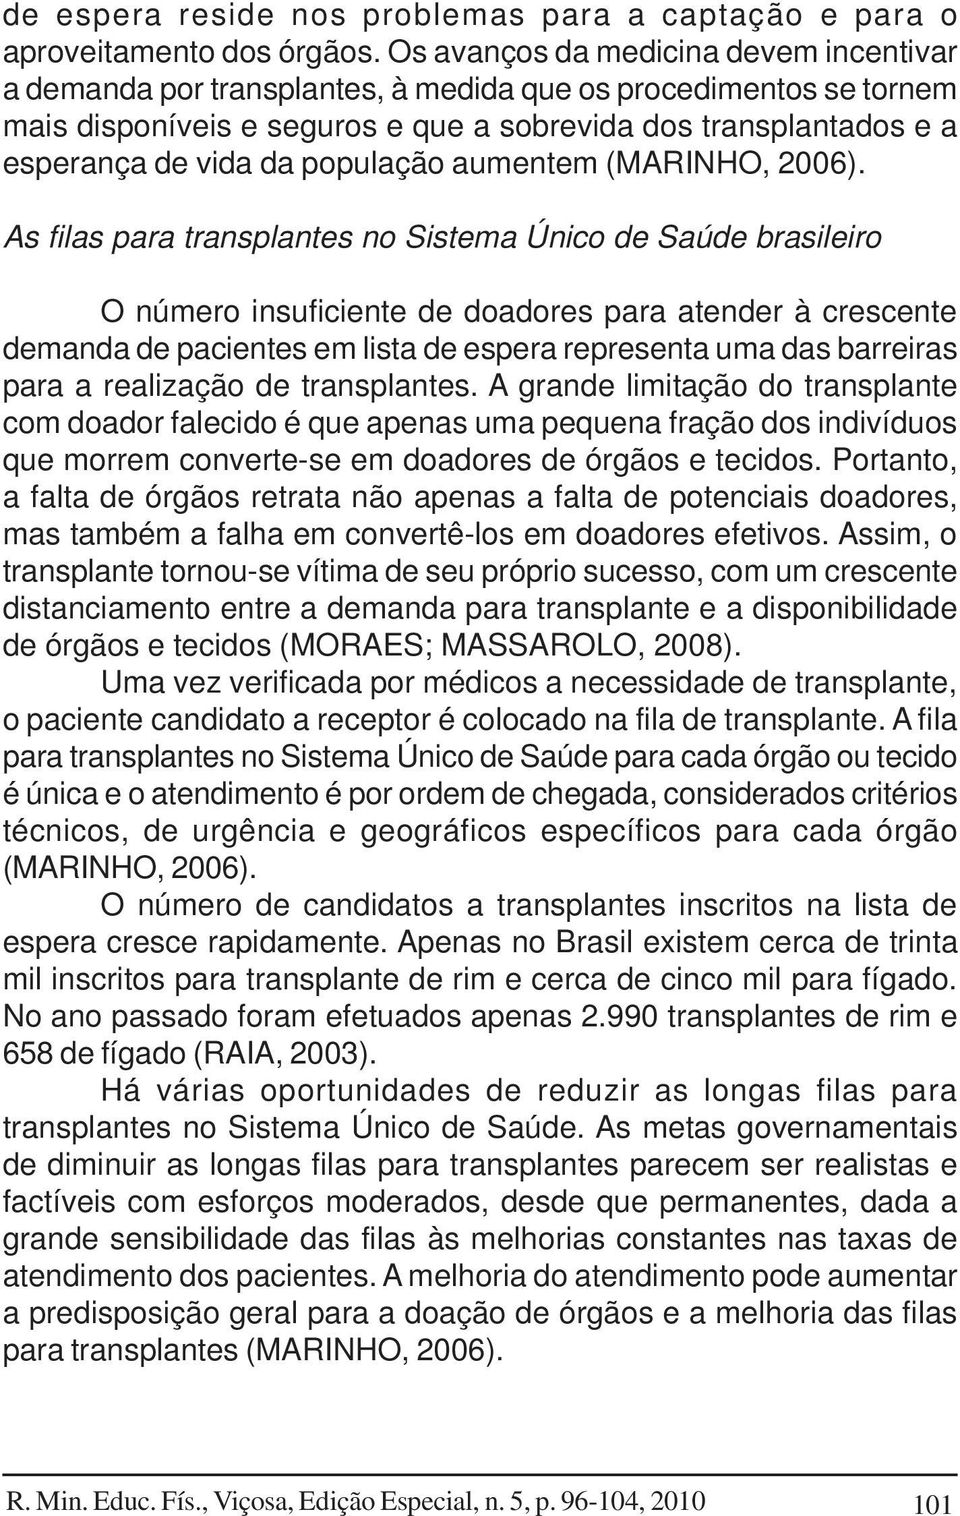 população aumentem (MARINHO, 2006).